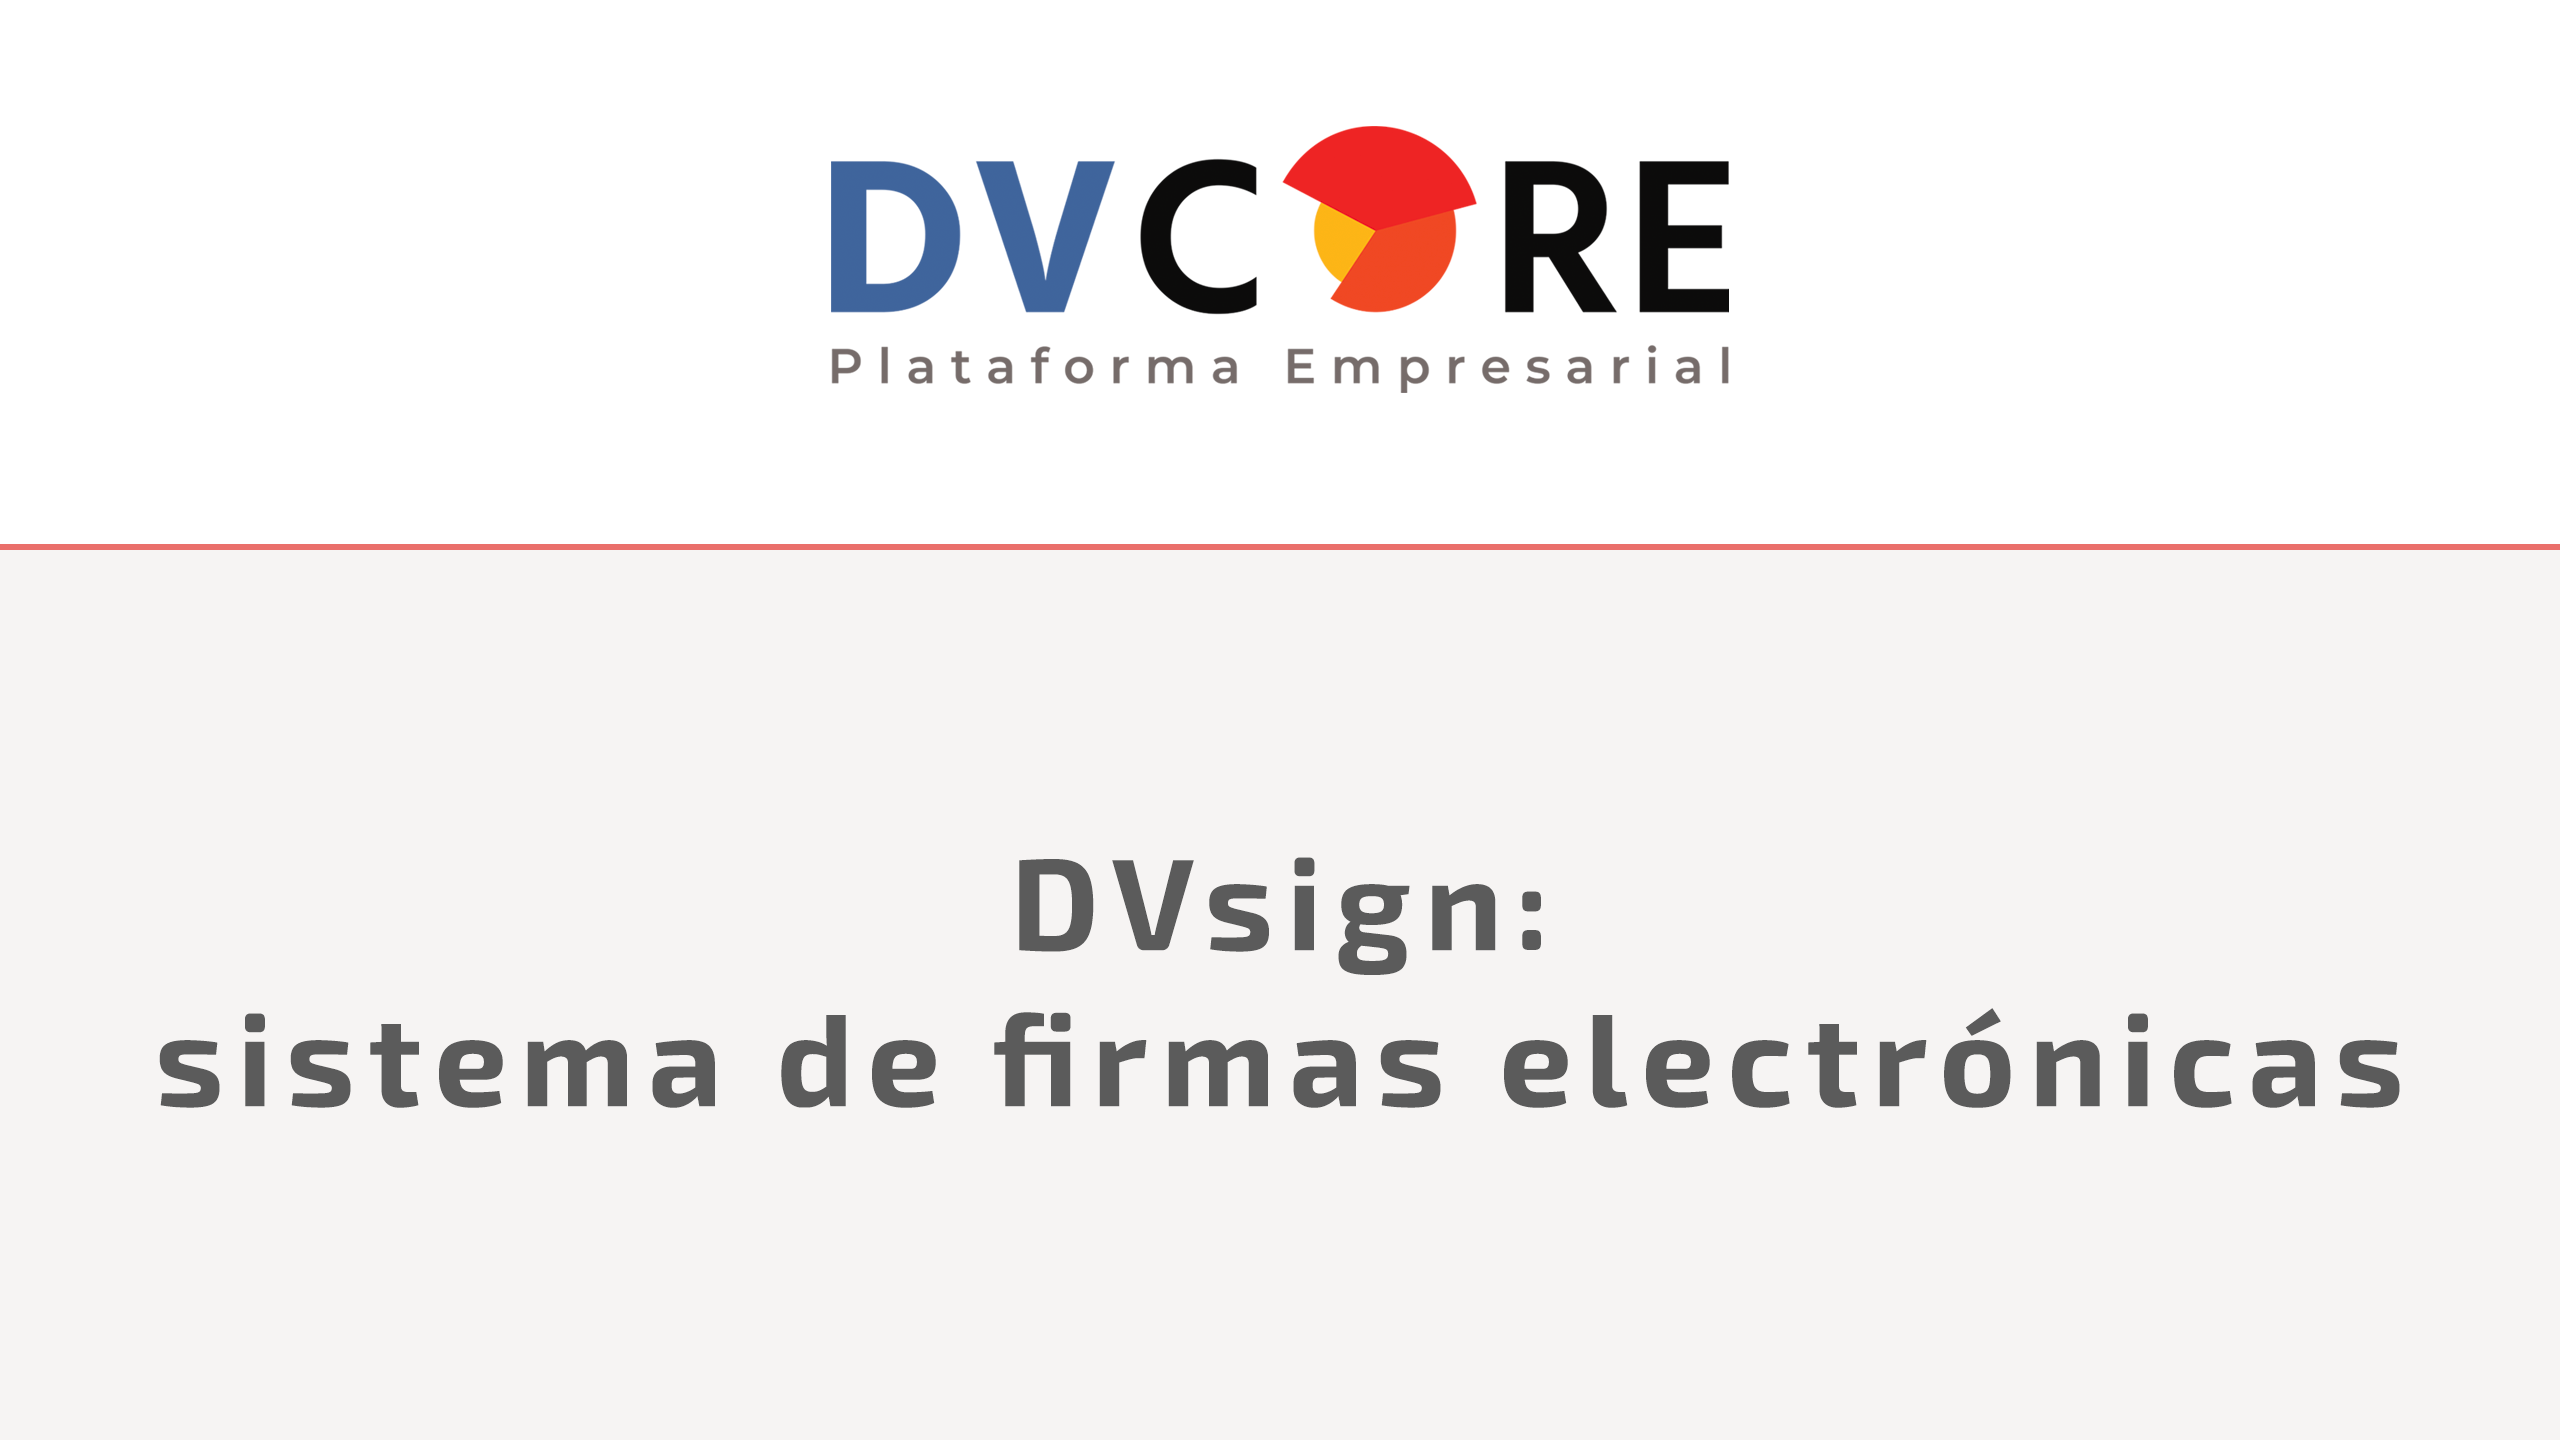 Video / DVsign: sistema de firmas electrónicas